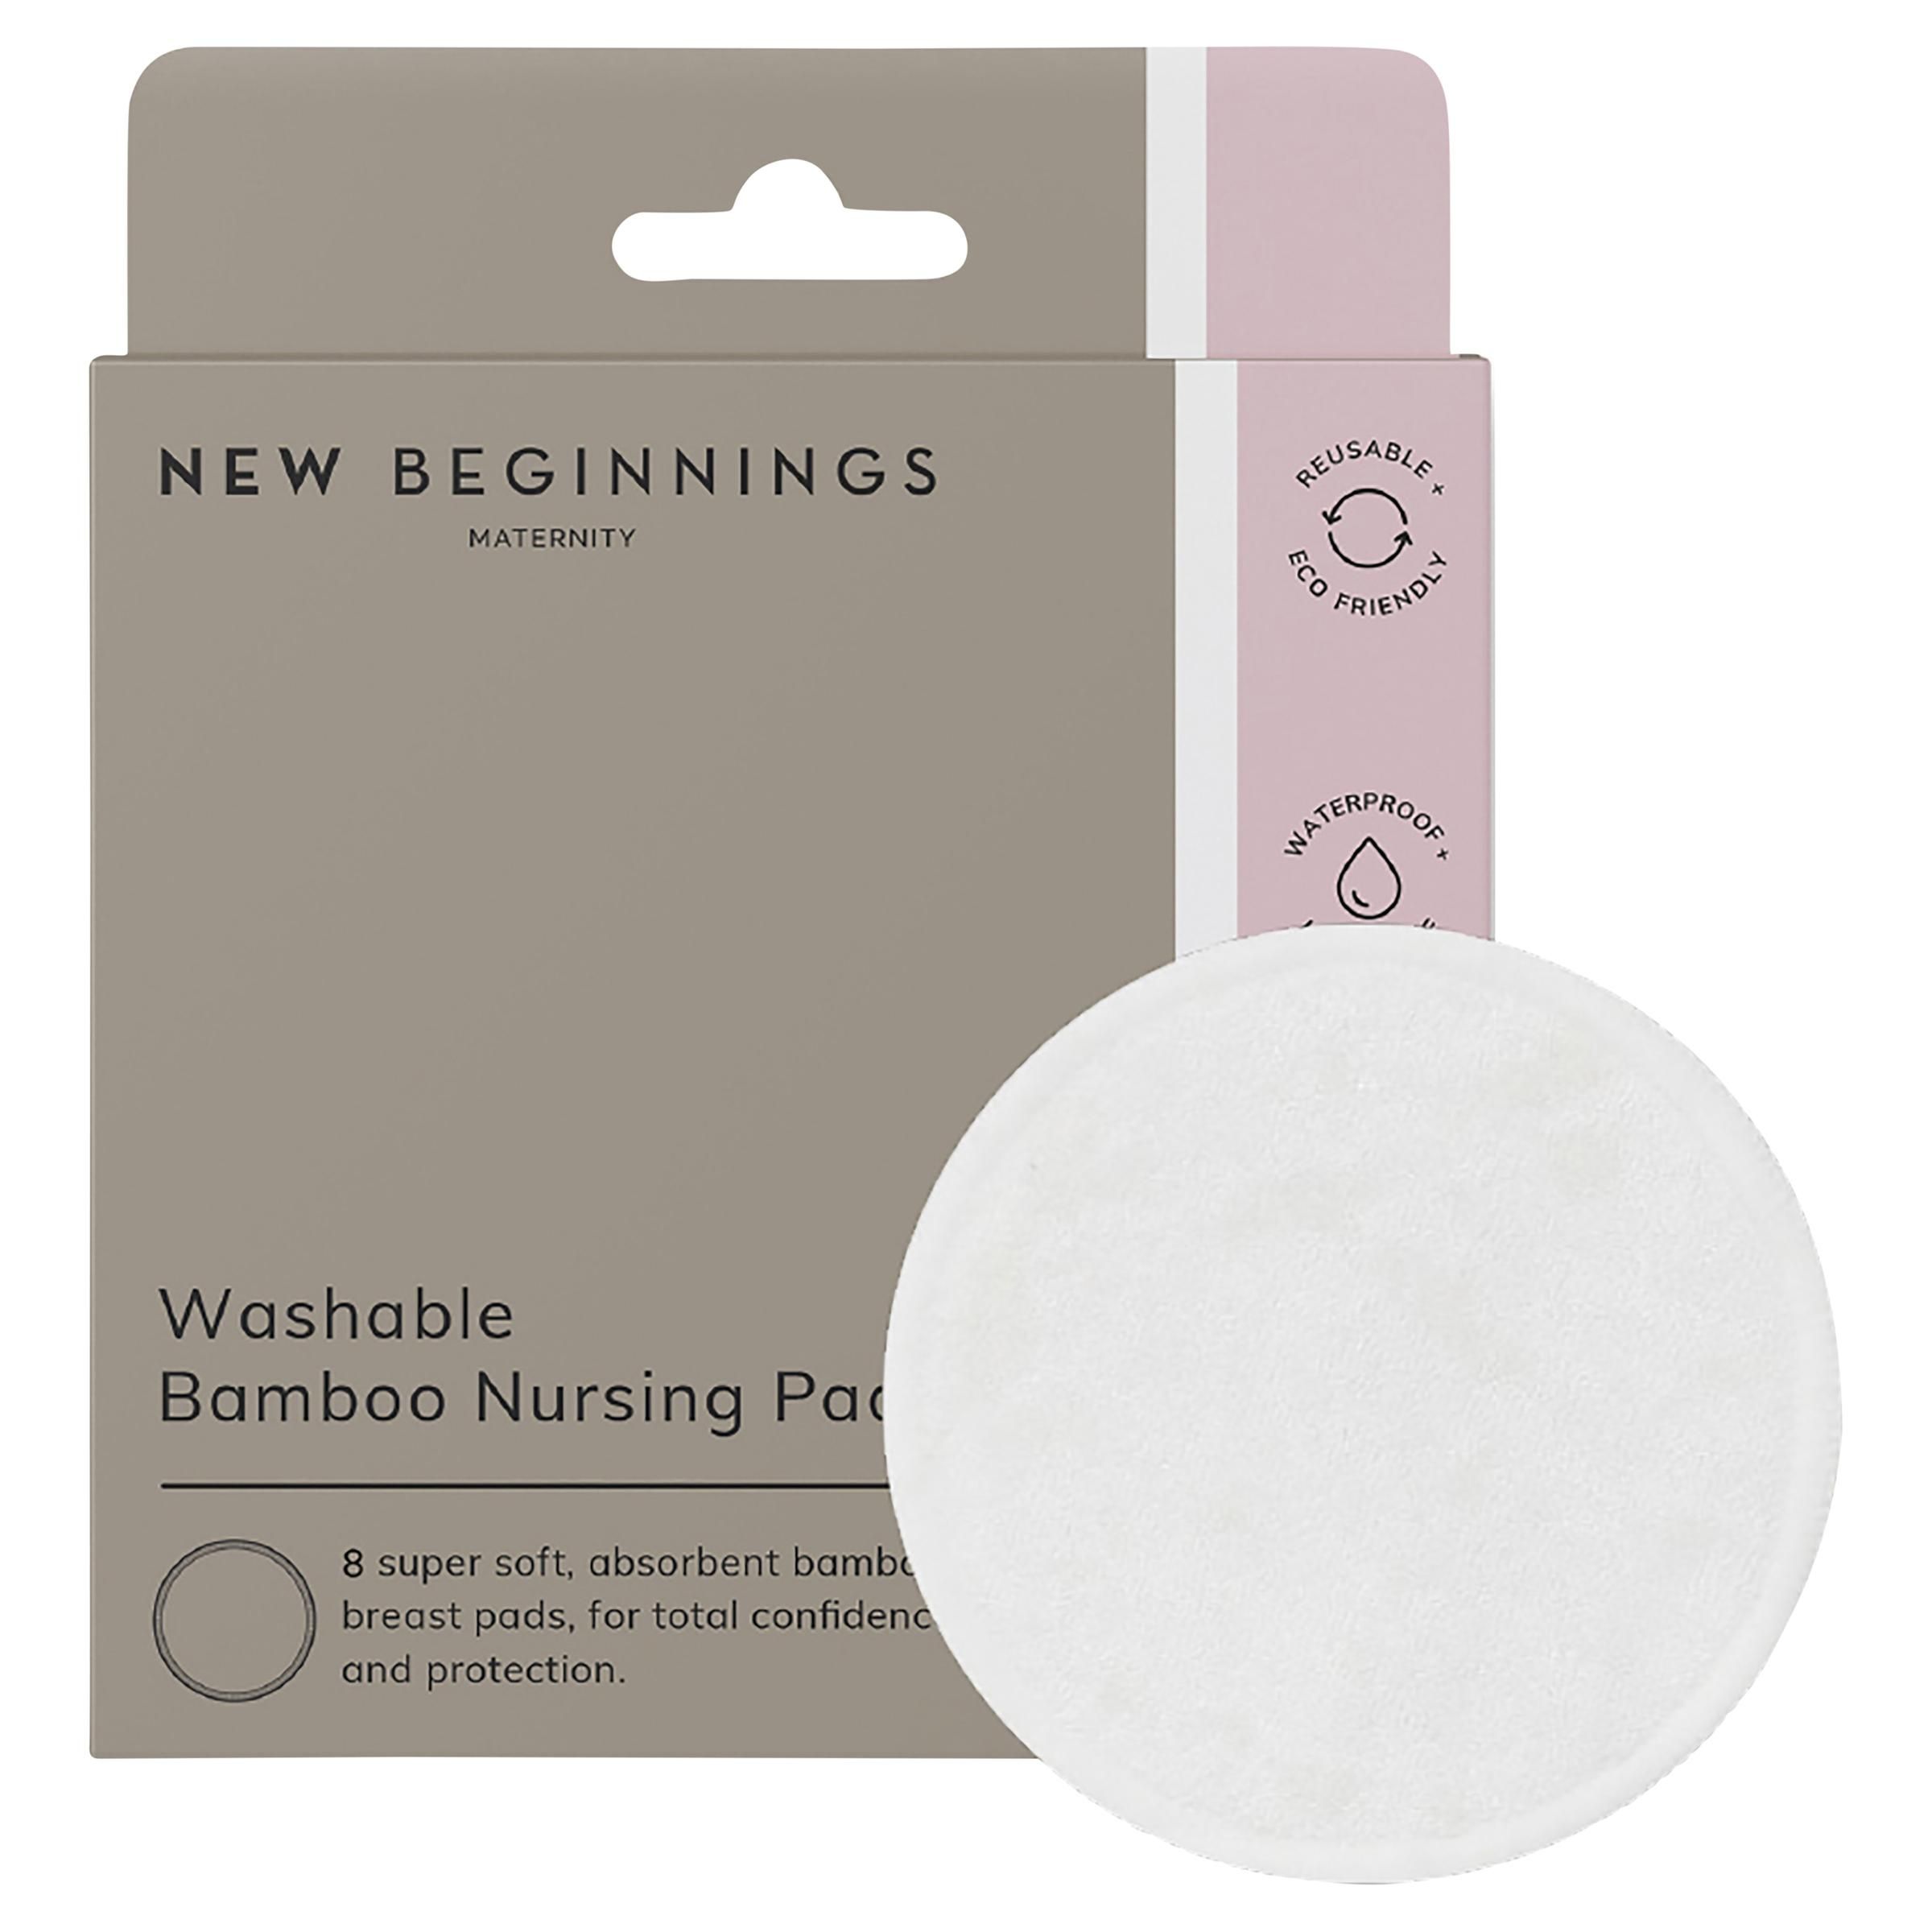 BAMBOO REUSABLE NURSING PADS - 8 pads